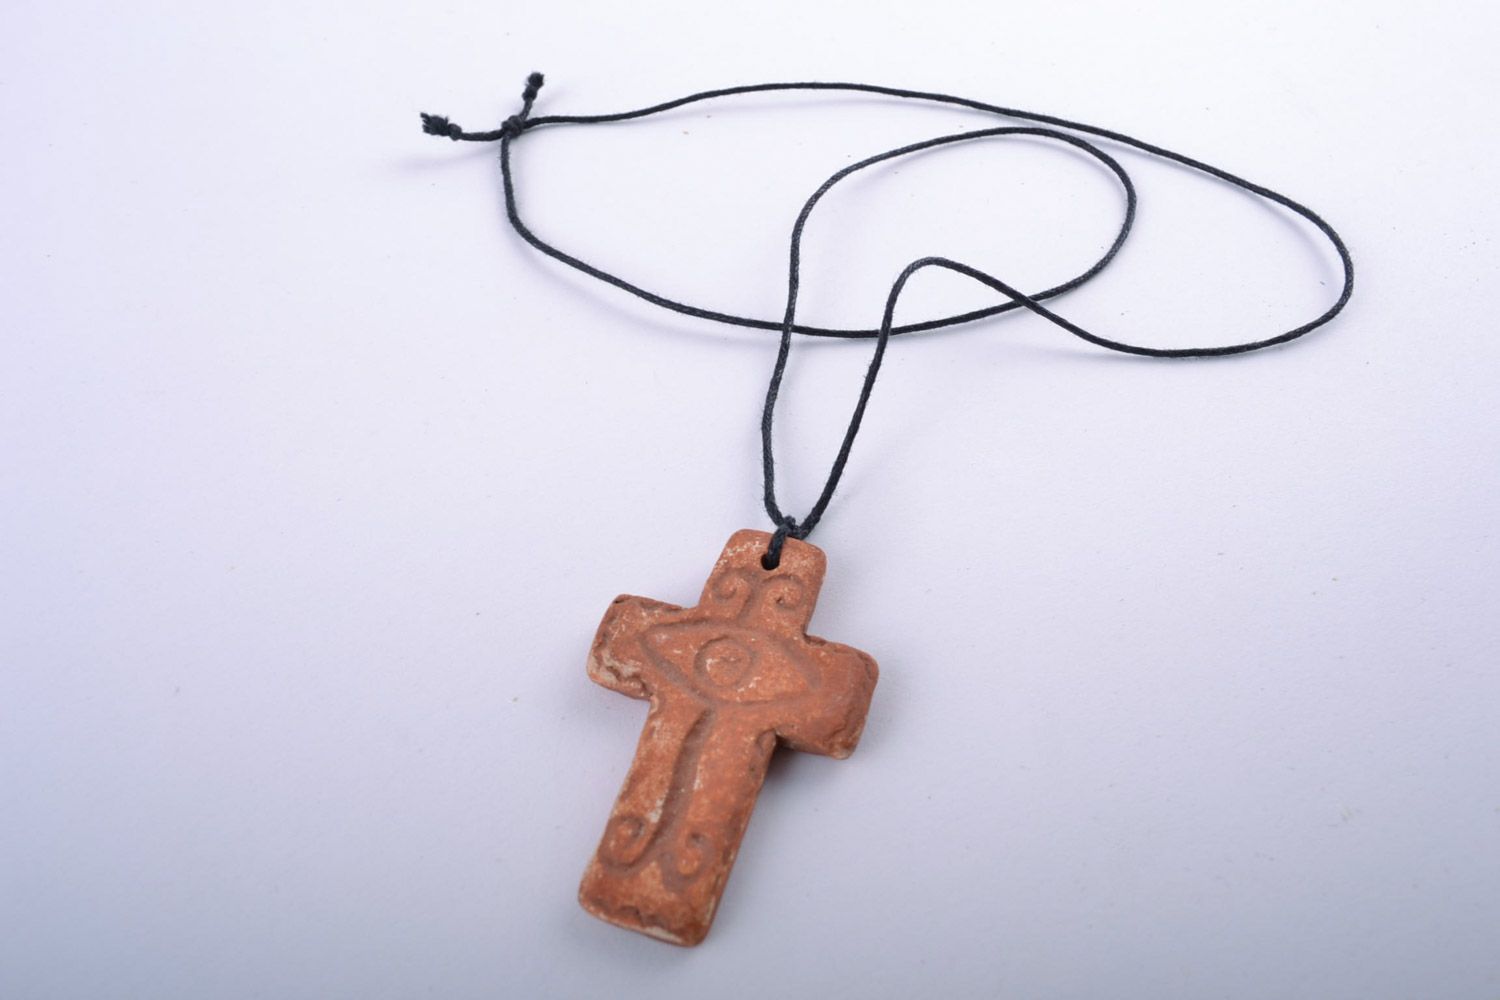 Оригинальный глиняный кулон в виде креста расписанный ангобами ручной работы фото 3